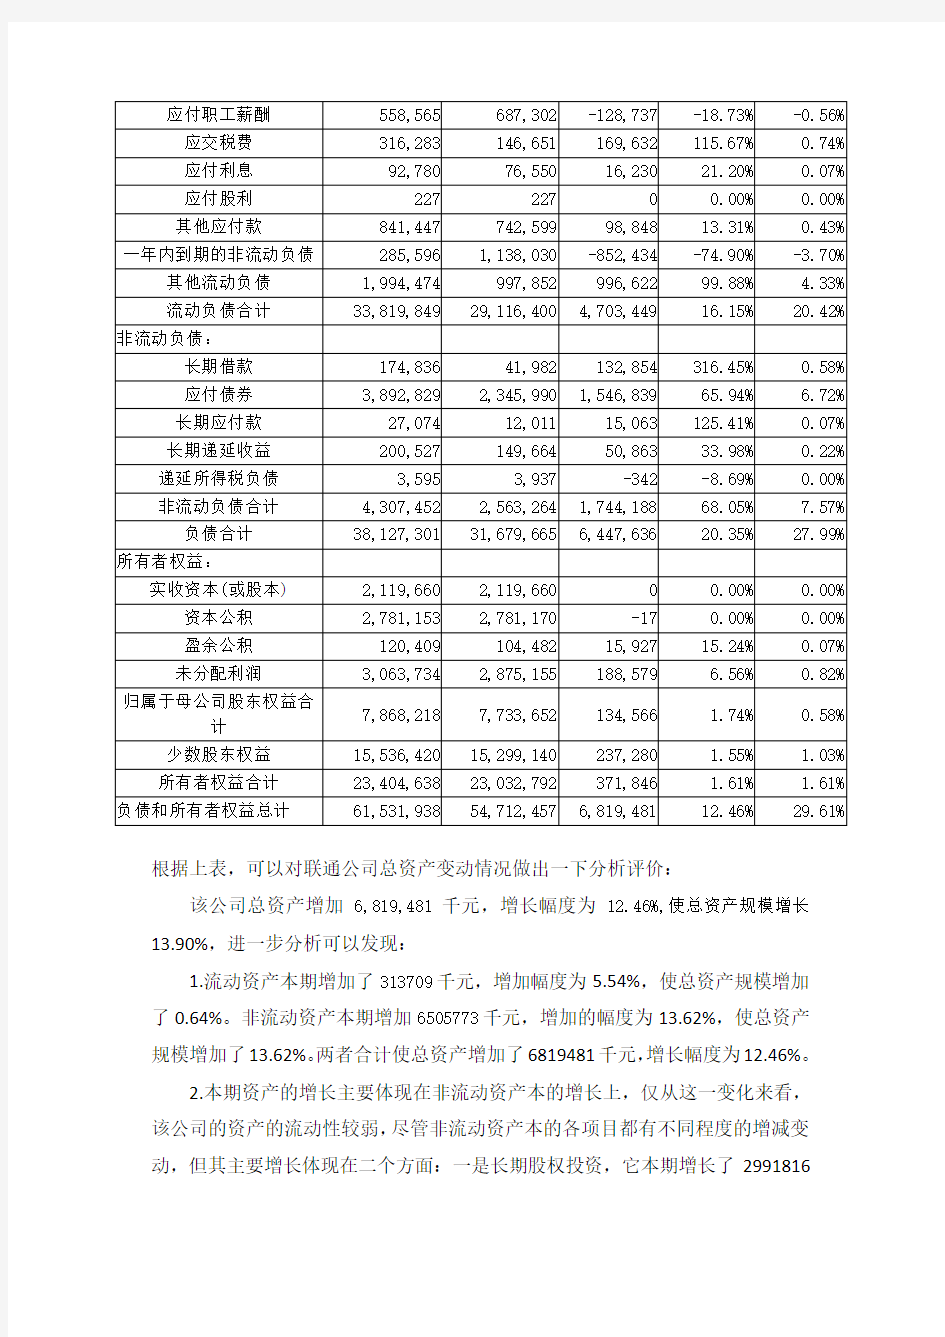 中国联通2015年资产负债表水平分析